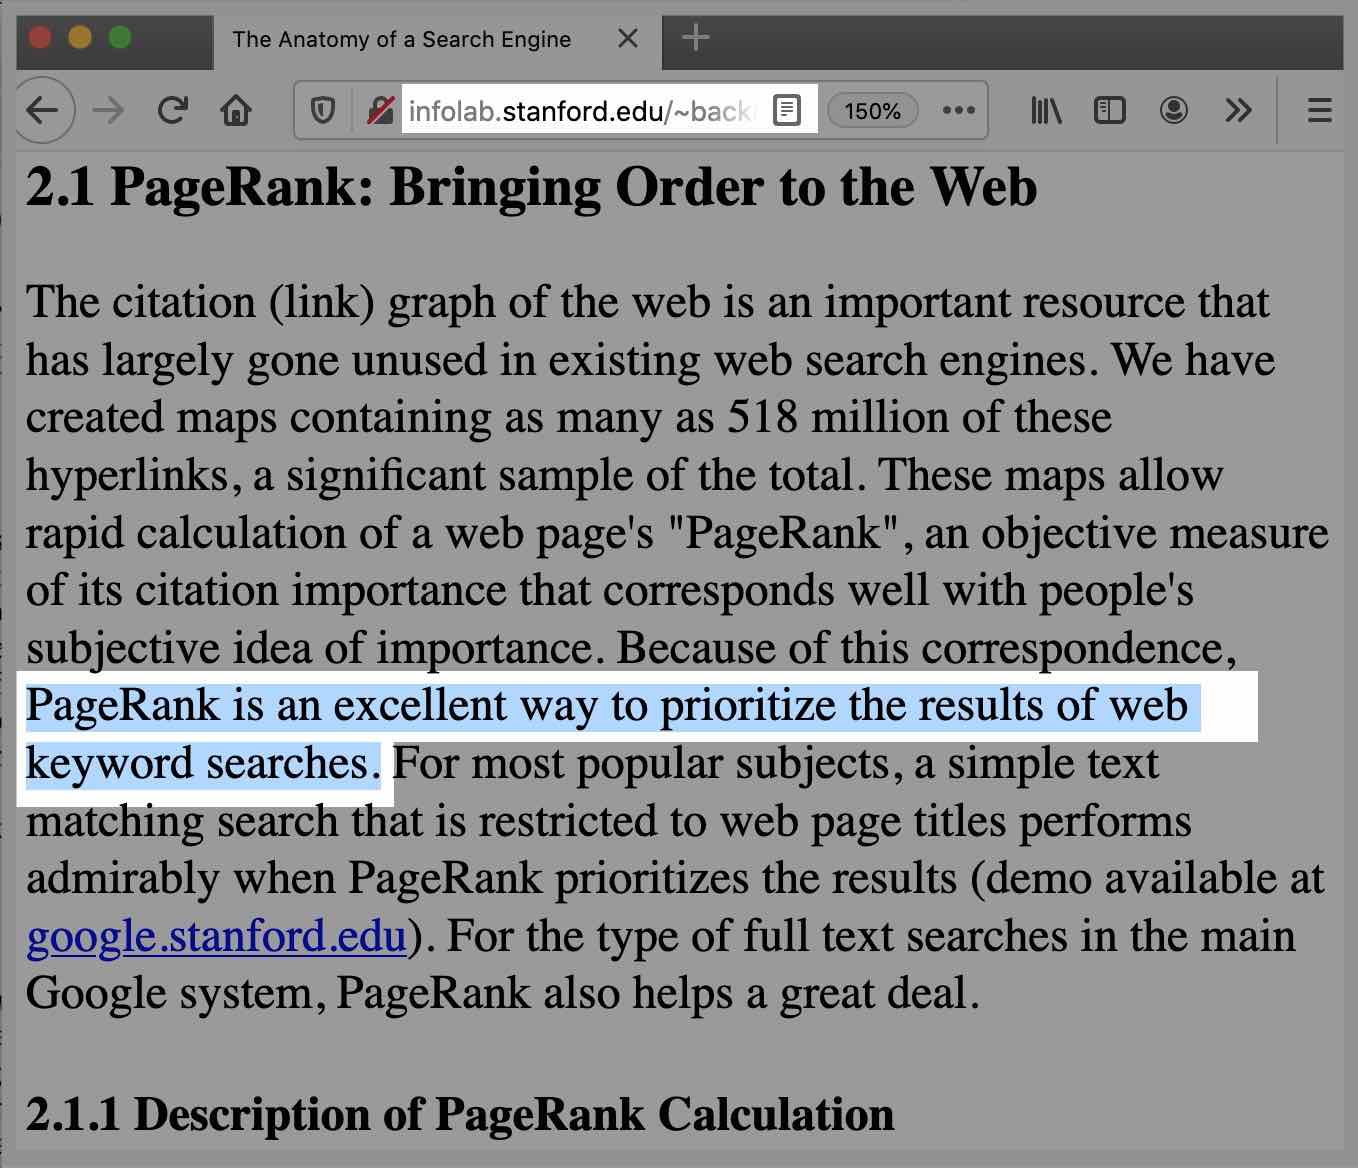 論文說明佐證PaegRank是排名因素